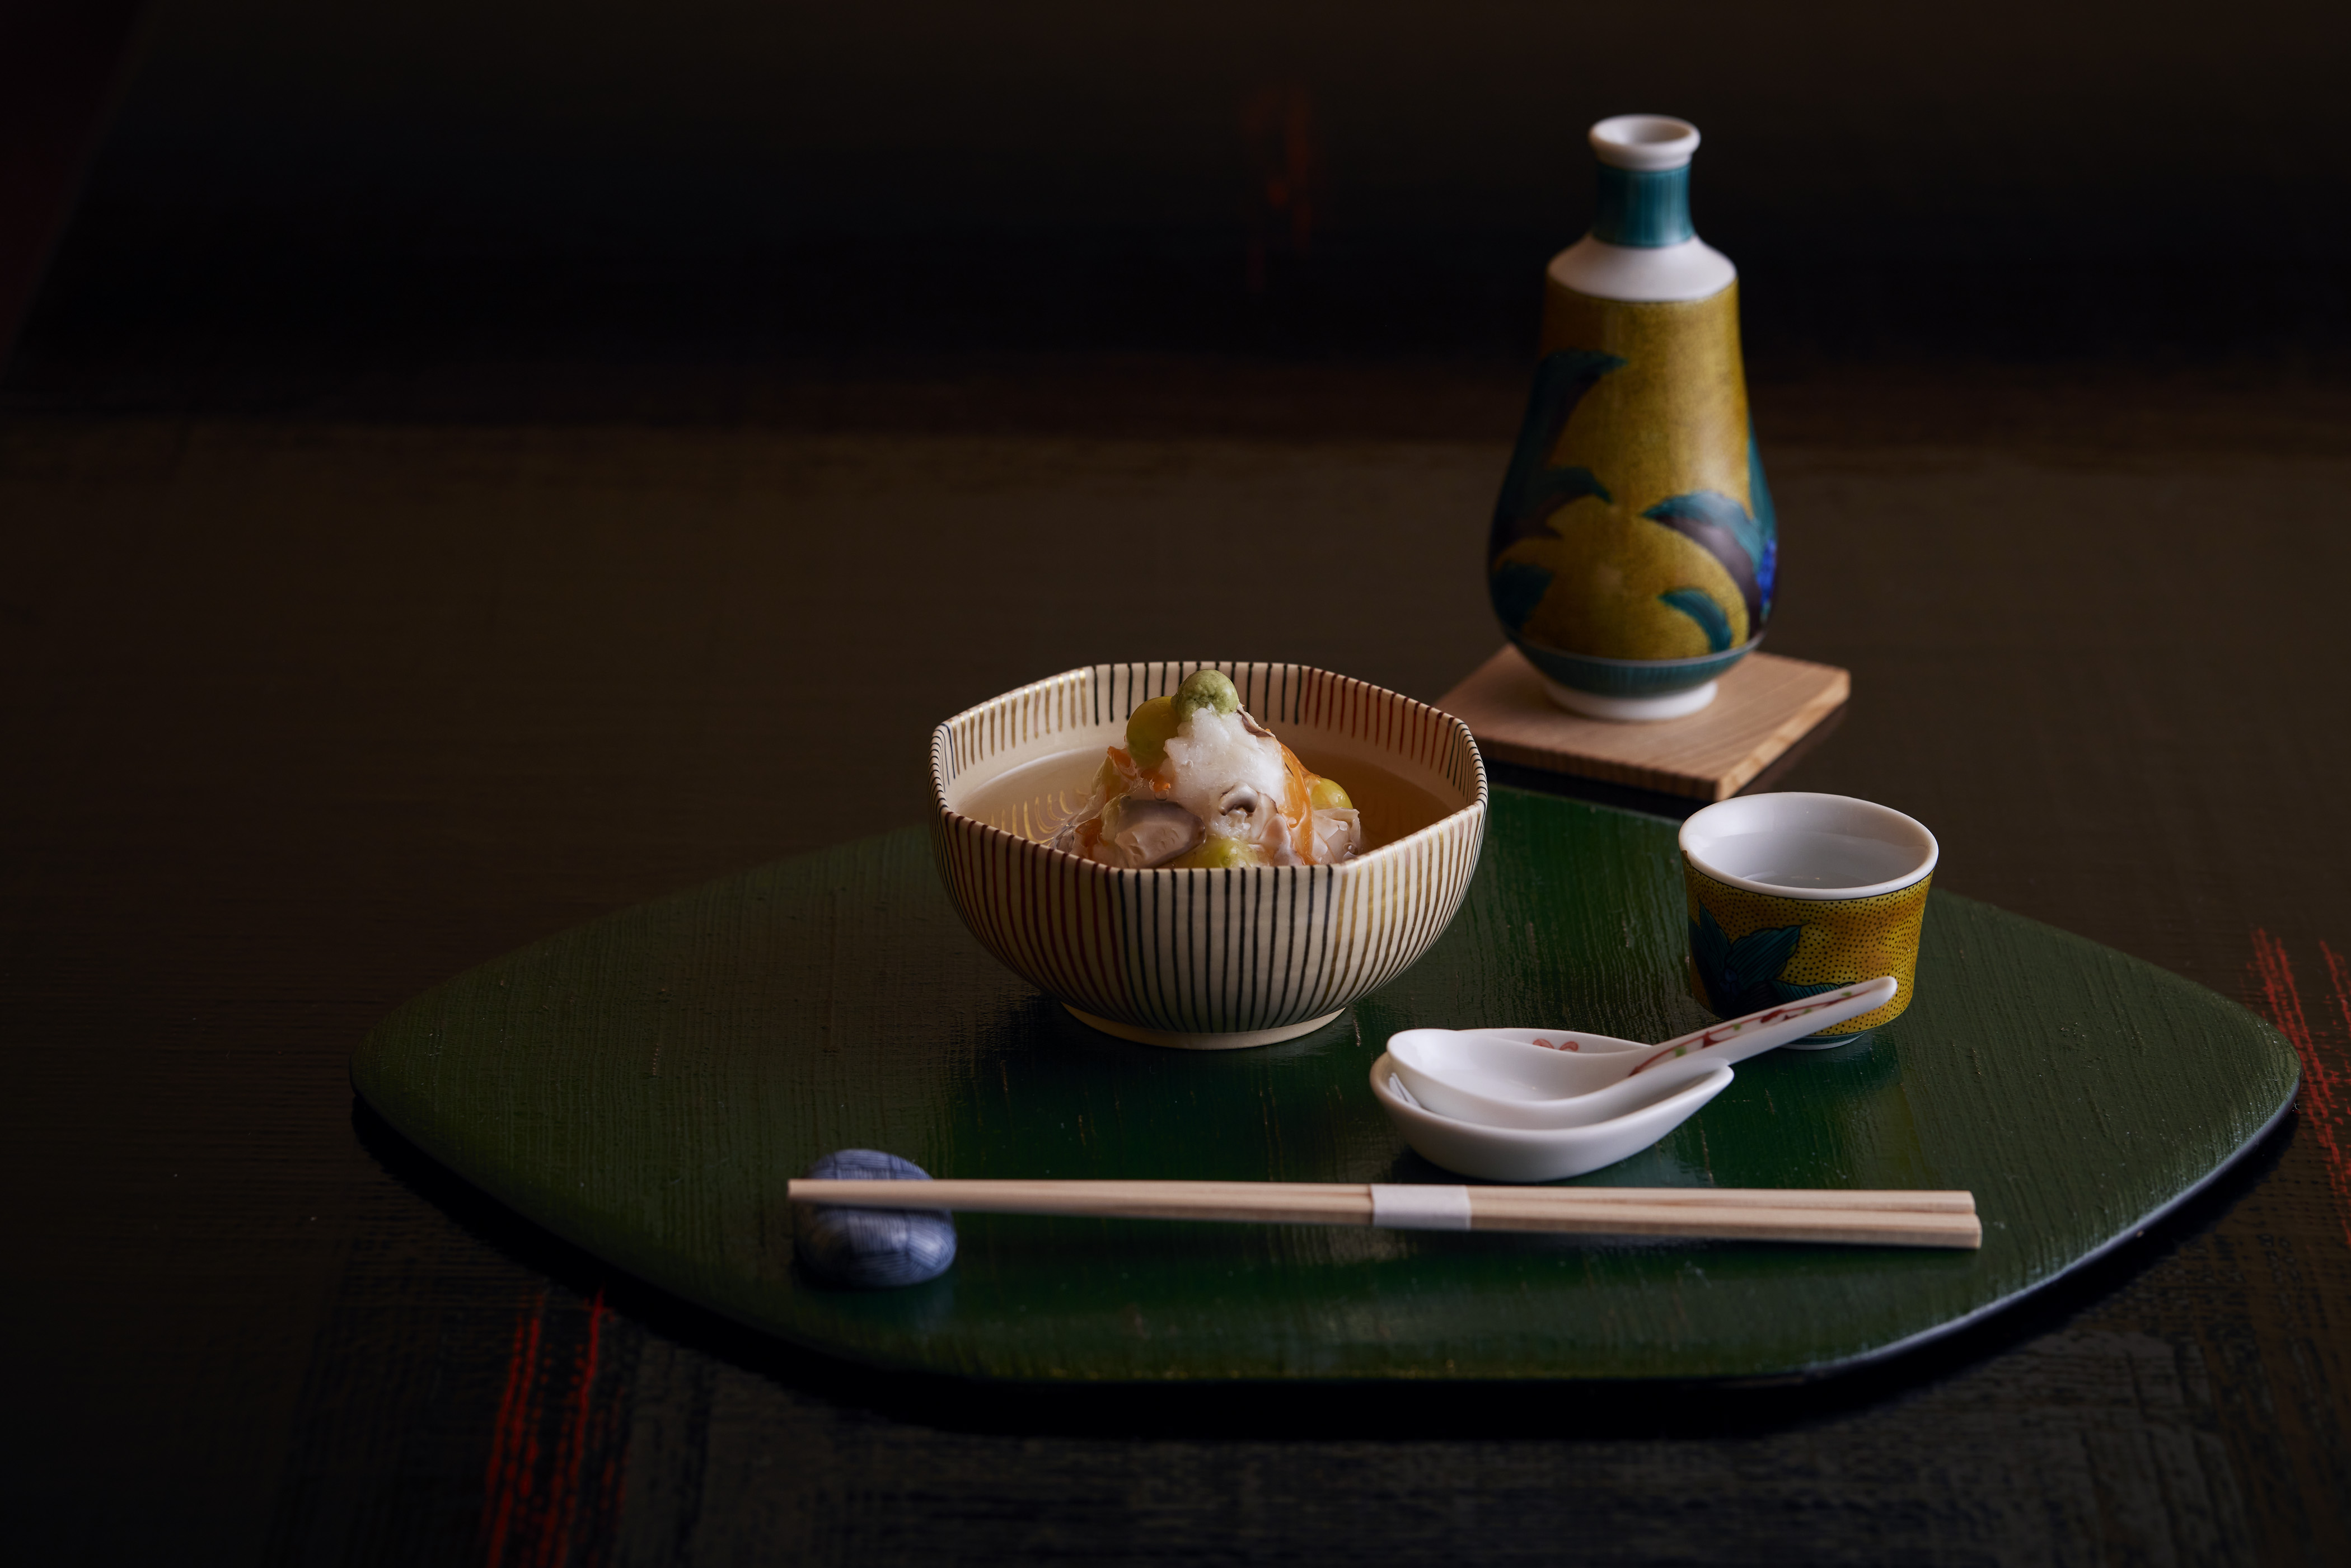 赤坂駅周辺にある和食・懐石料理「ぎをん 赤坂 やげんぼり」さんのクチコミレポート。京料理・テイクアウトが人気